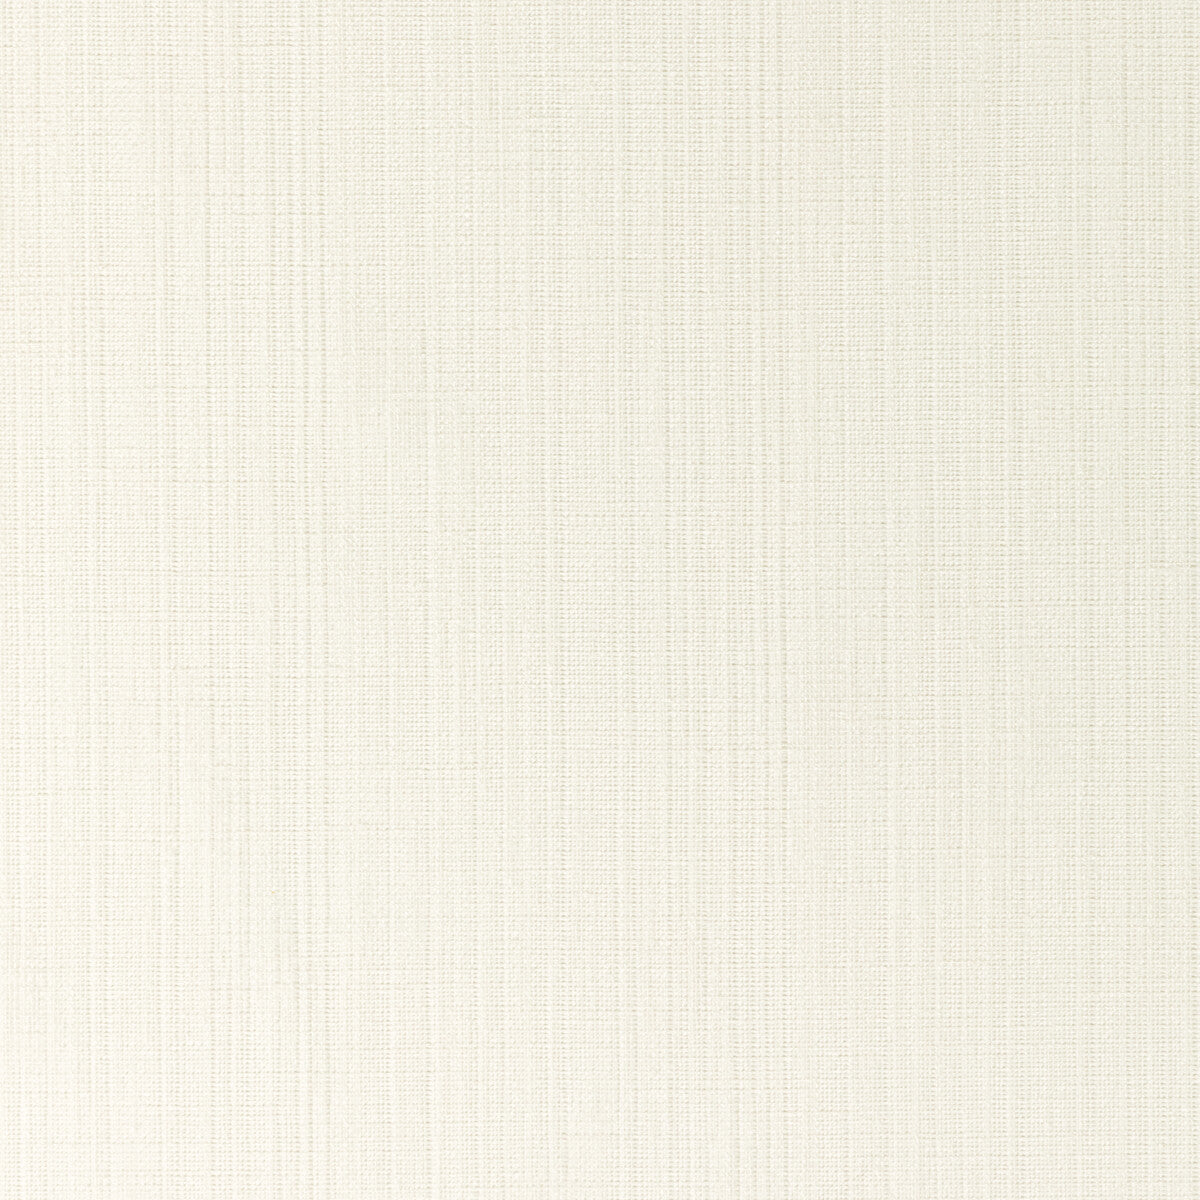 Kravet Basics fabric in 4878-1 color - pattern 4878.1.0 - by Kravet Basics